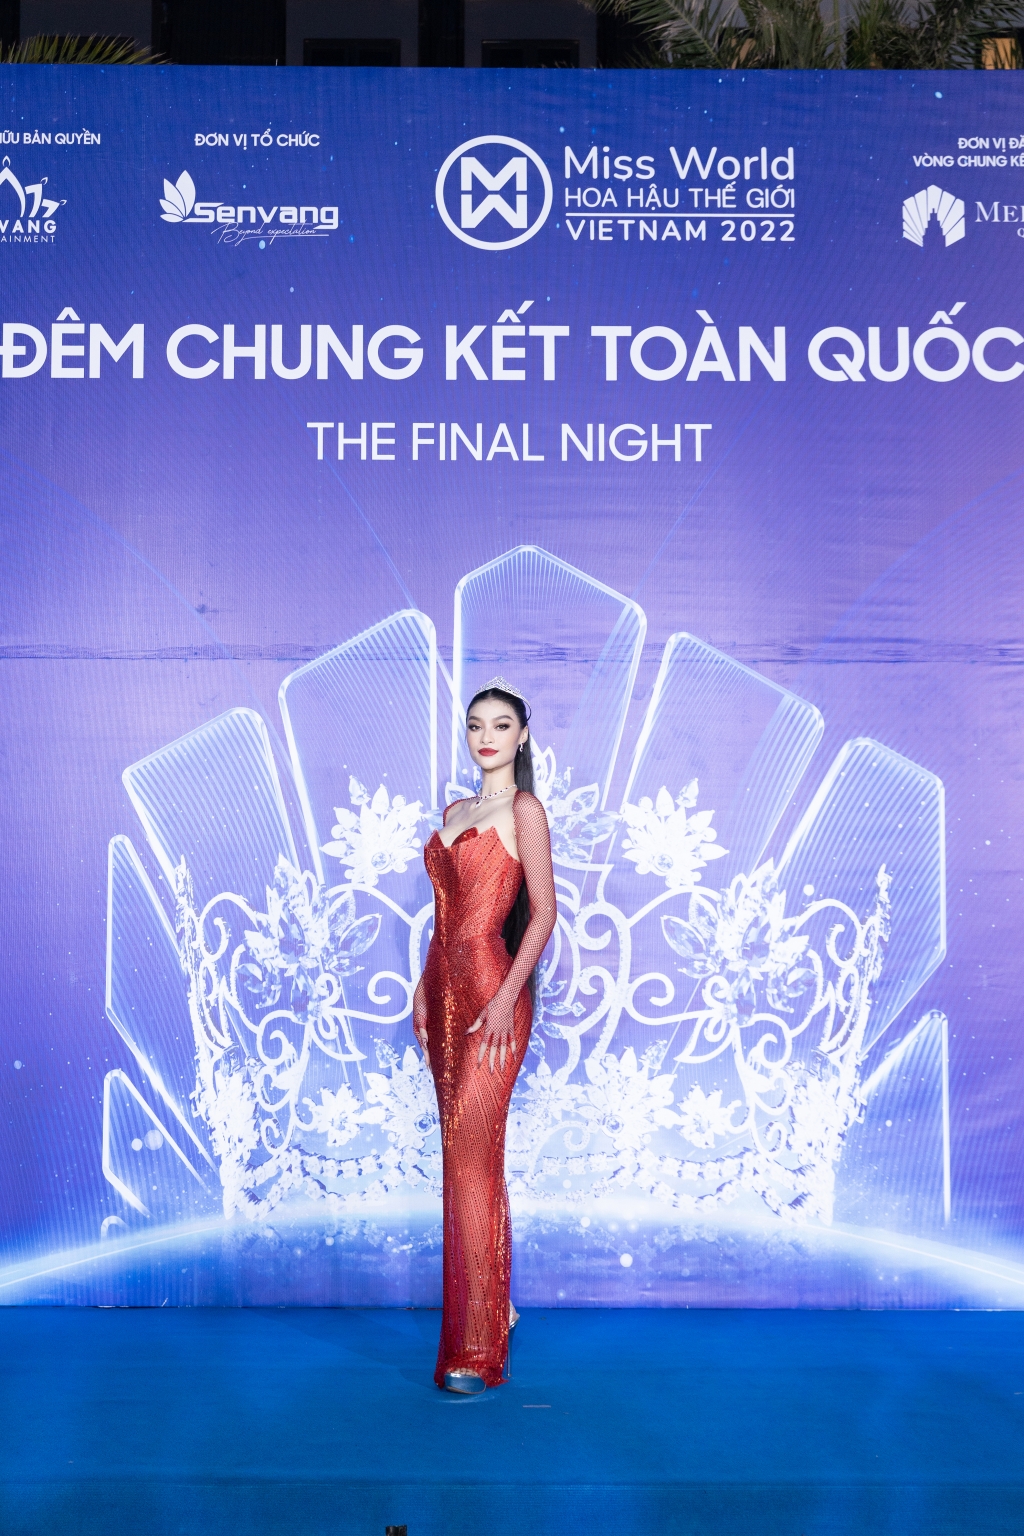 Dàn sao khủng xuất hiện trên thảm đỏ chung kết Miss World Vietnam 2022